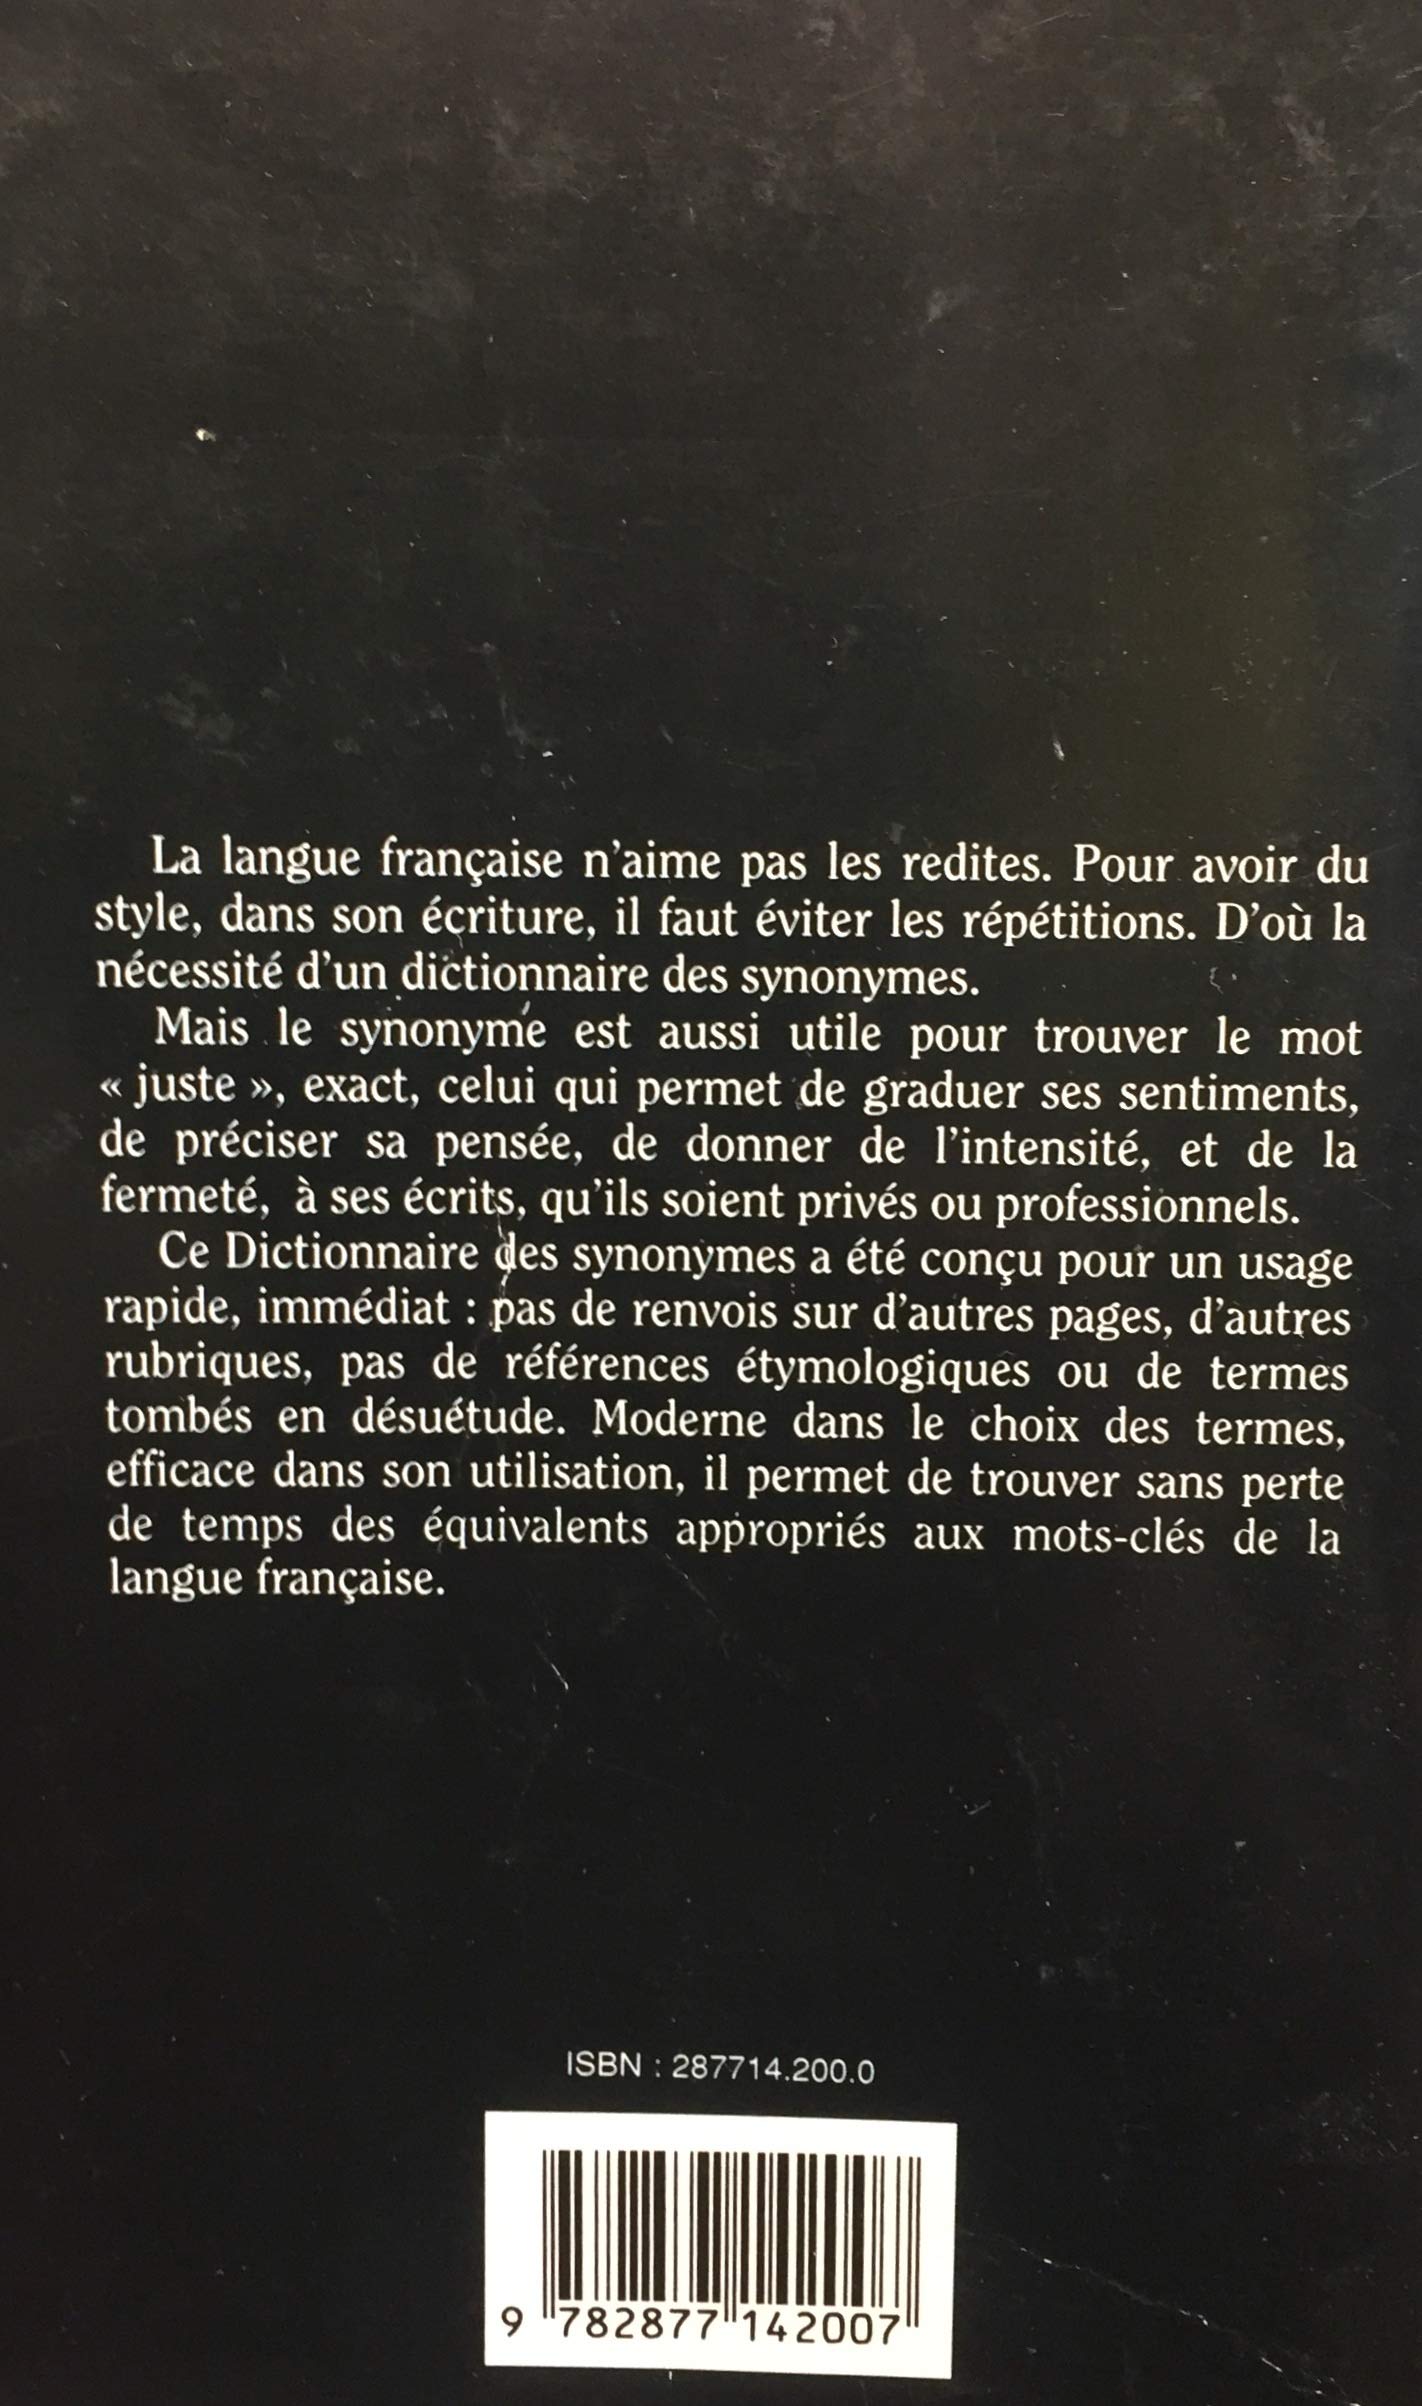 Dictionnaire des synonymes de la langue française (Pierre Ripert)